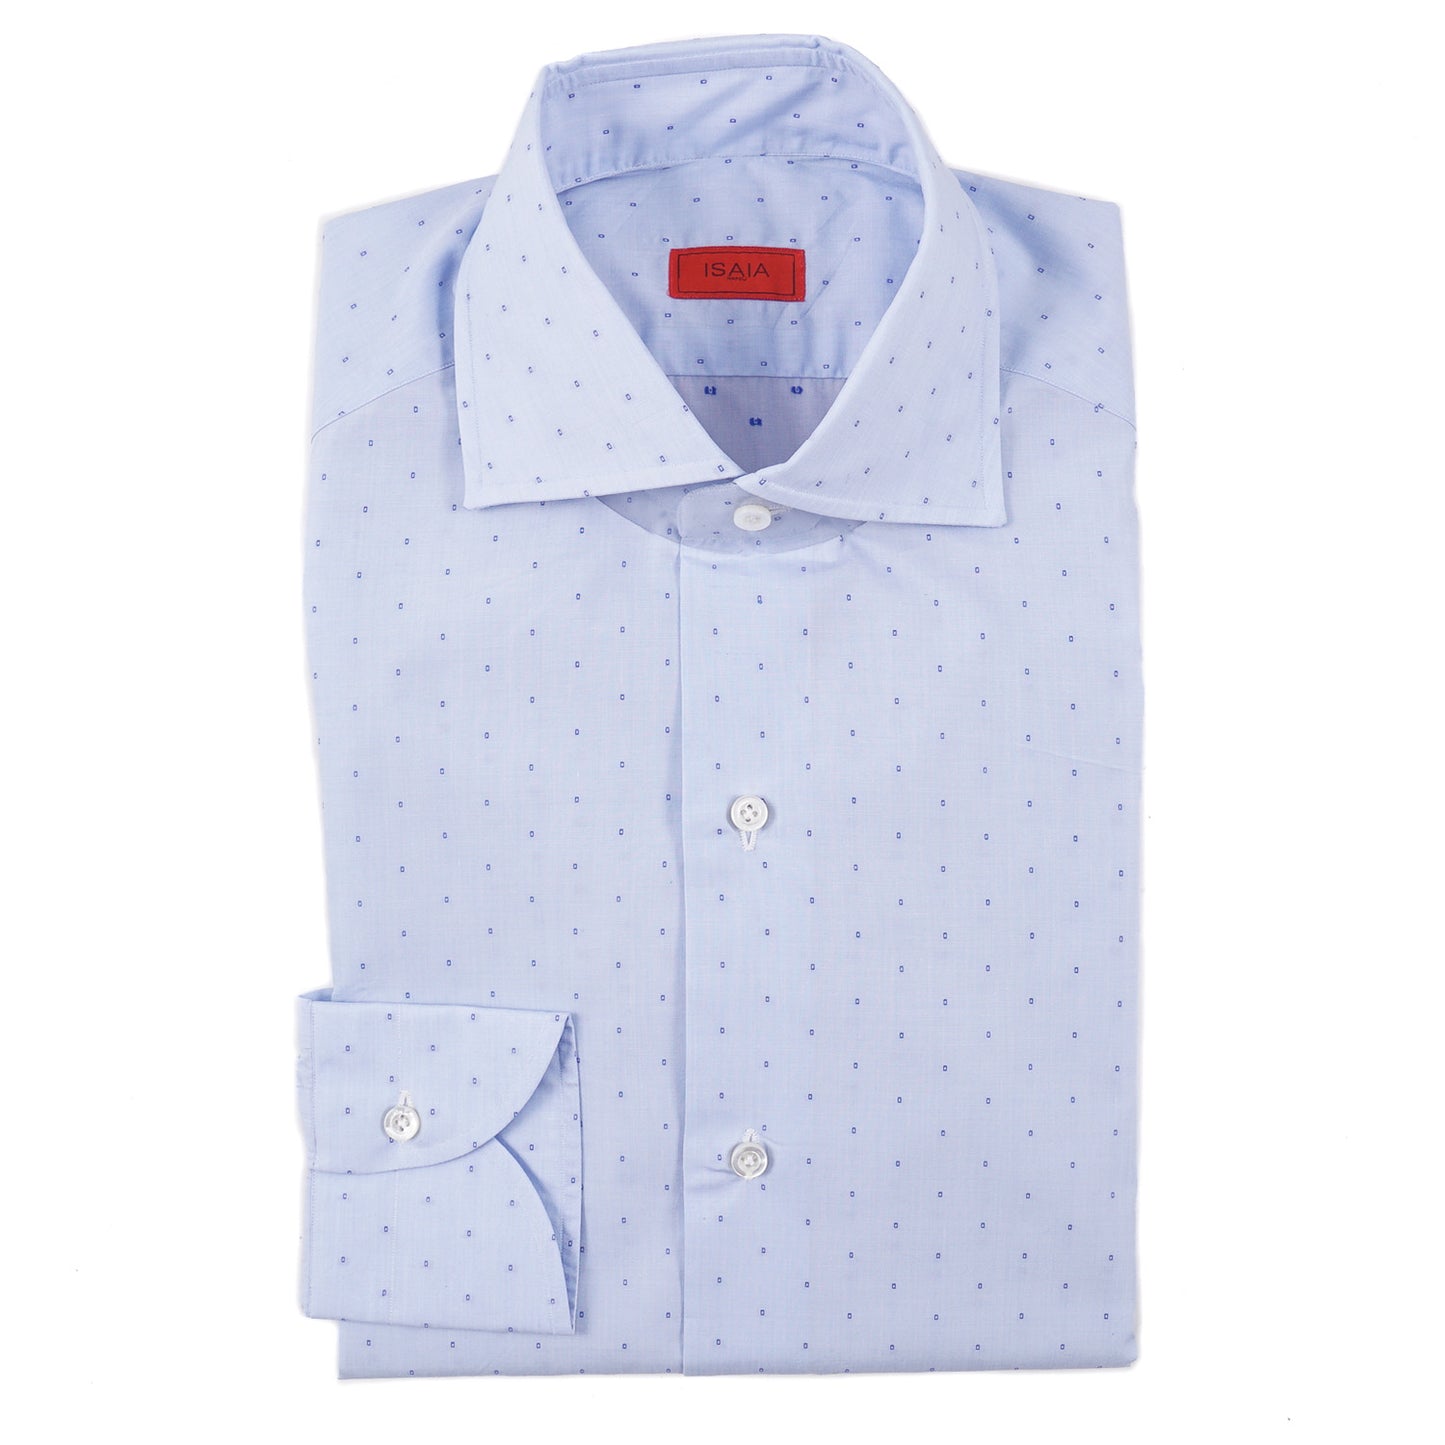 Isaia Modern 'Mix Fit' Lightweight Cotton Shirt - Top Shelf Apparel